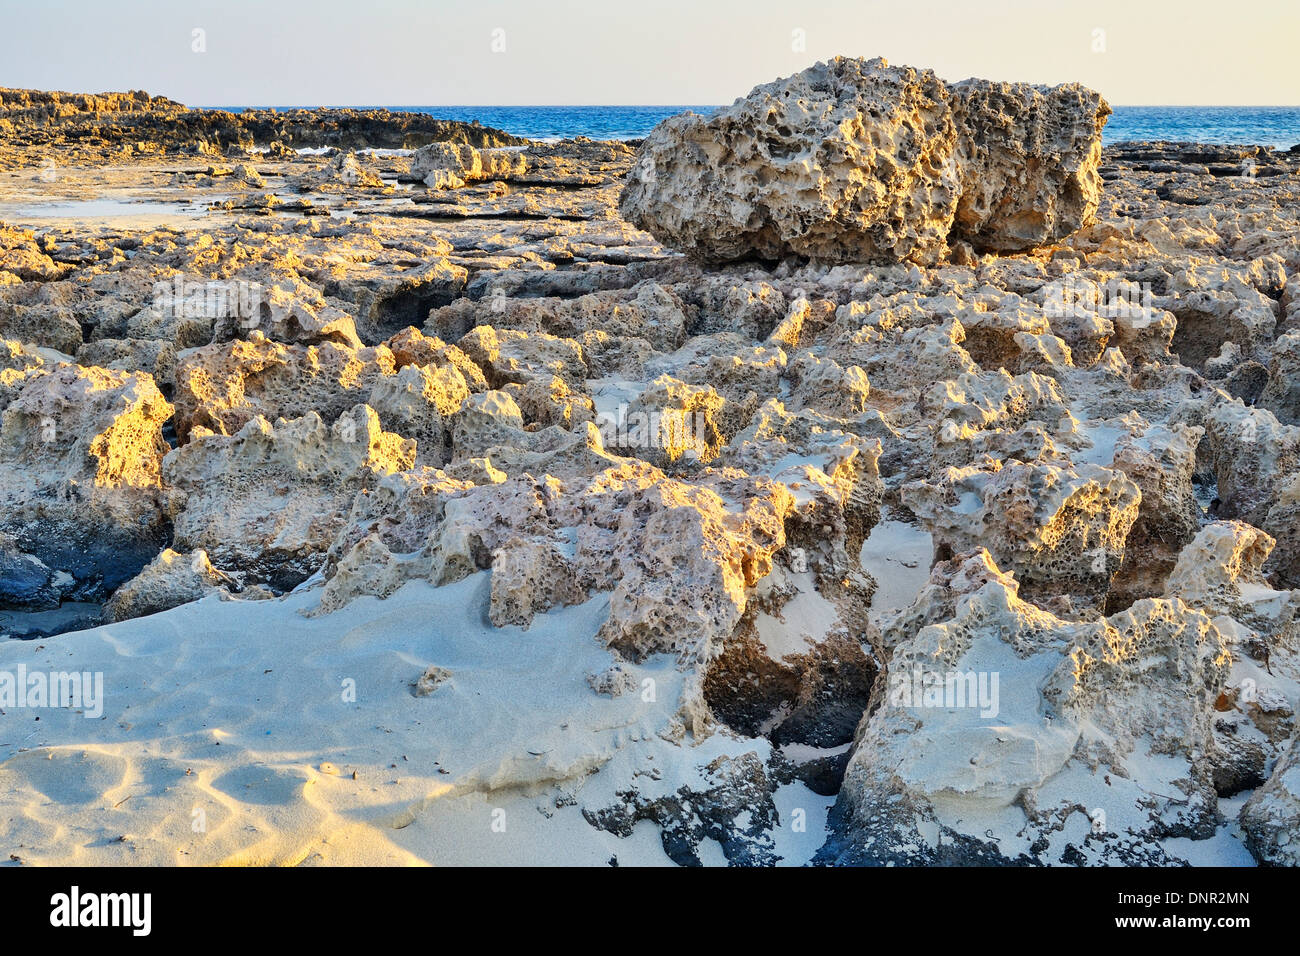 Die untergehende Sonne bescheint eine Felsformation im Nissi Beach in Ayia Napa, Zypern. Stockfoto